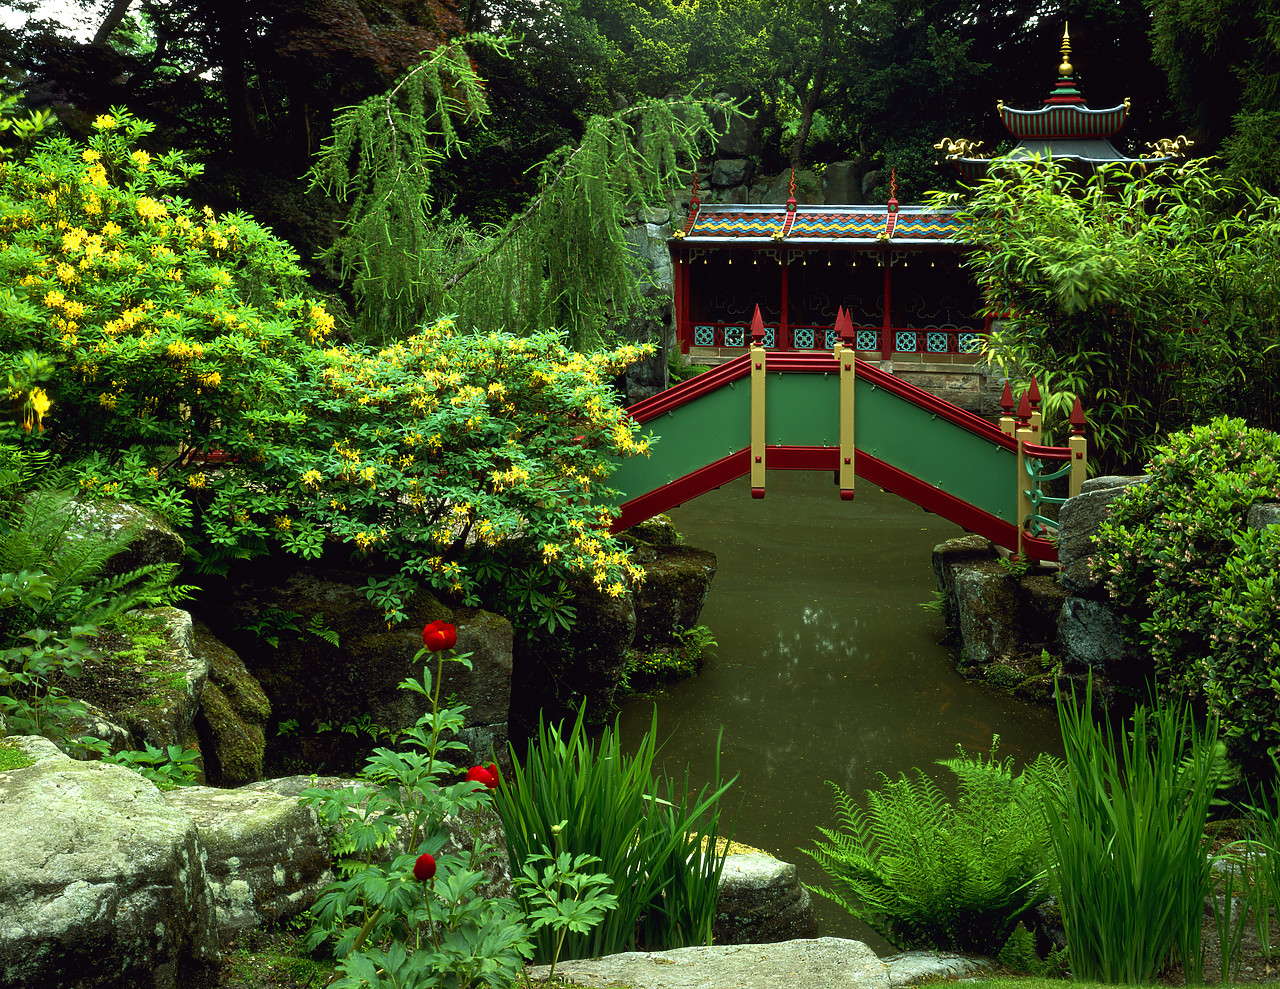 #030207-3 - Chinese Garden, Biddulph Grange, Staffordshire, England